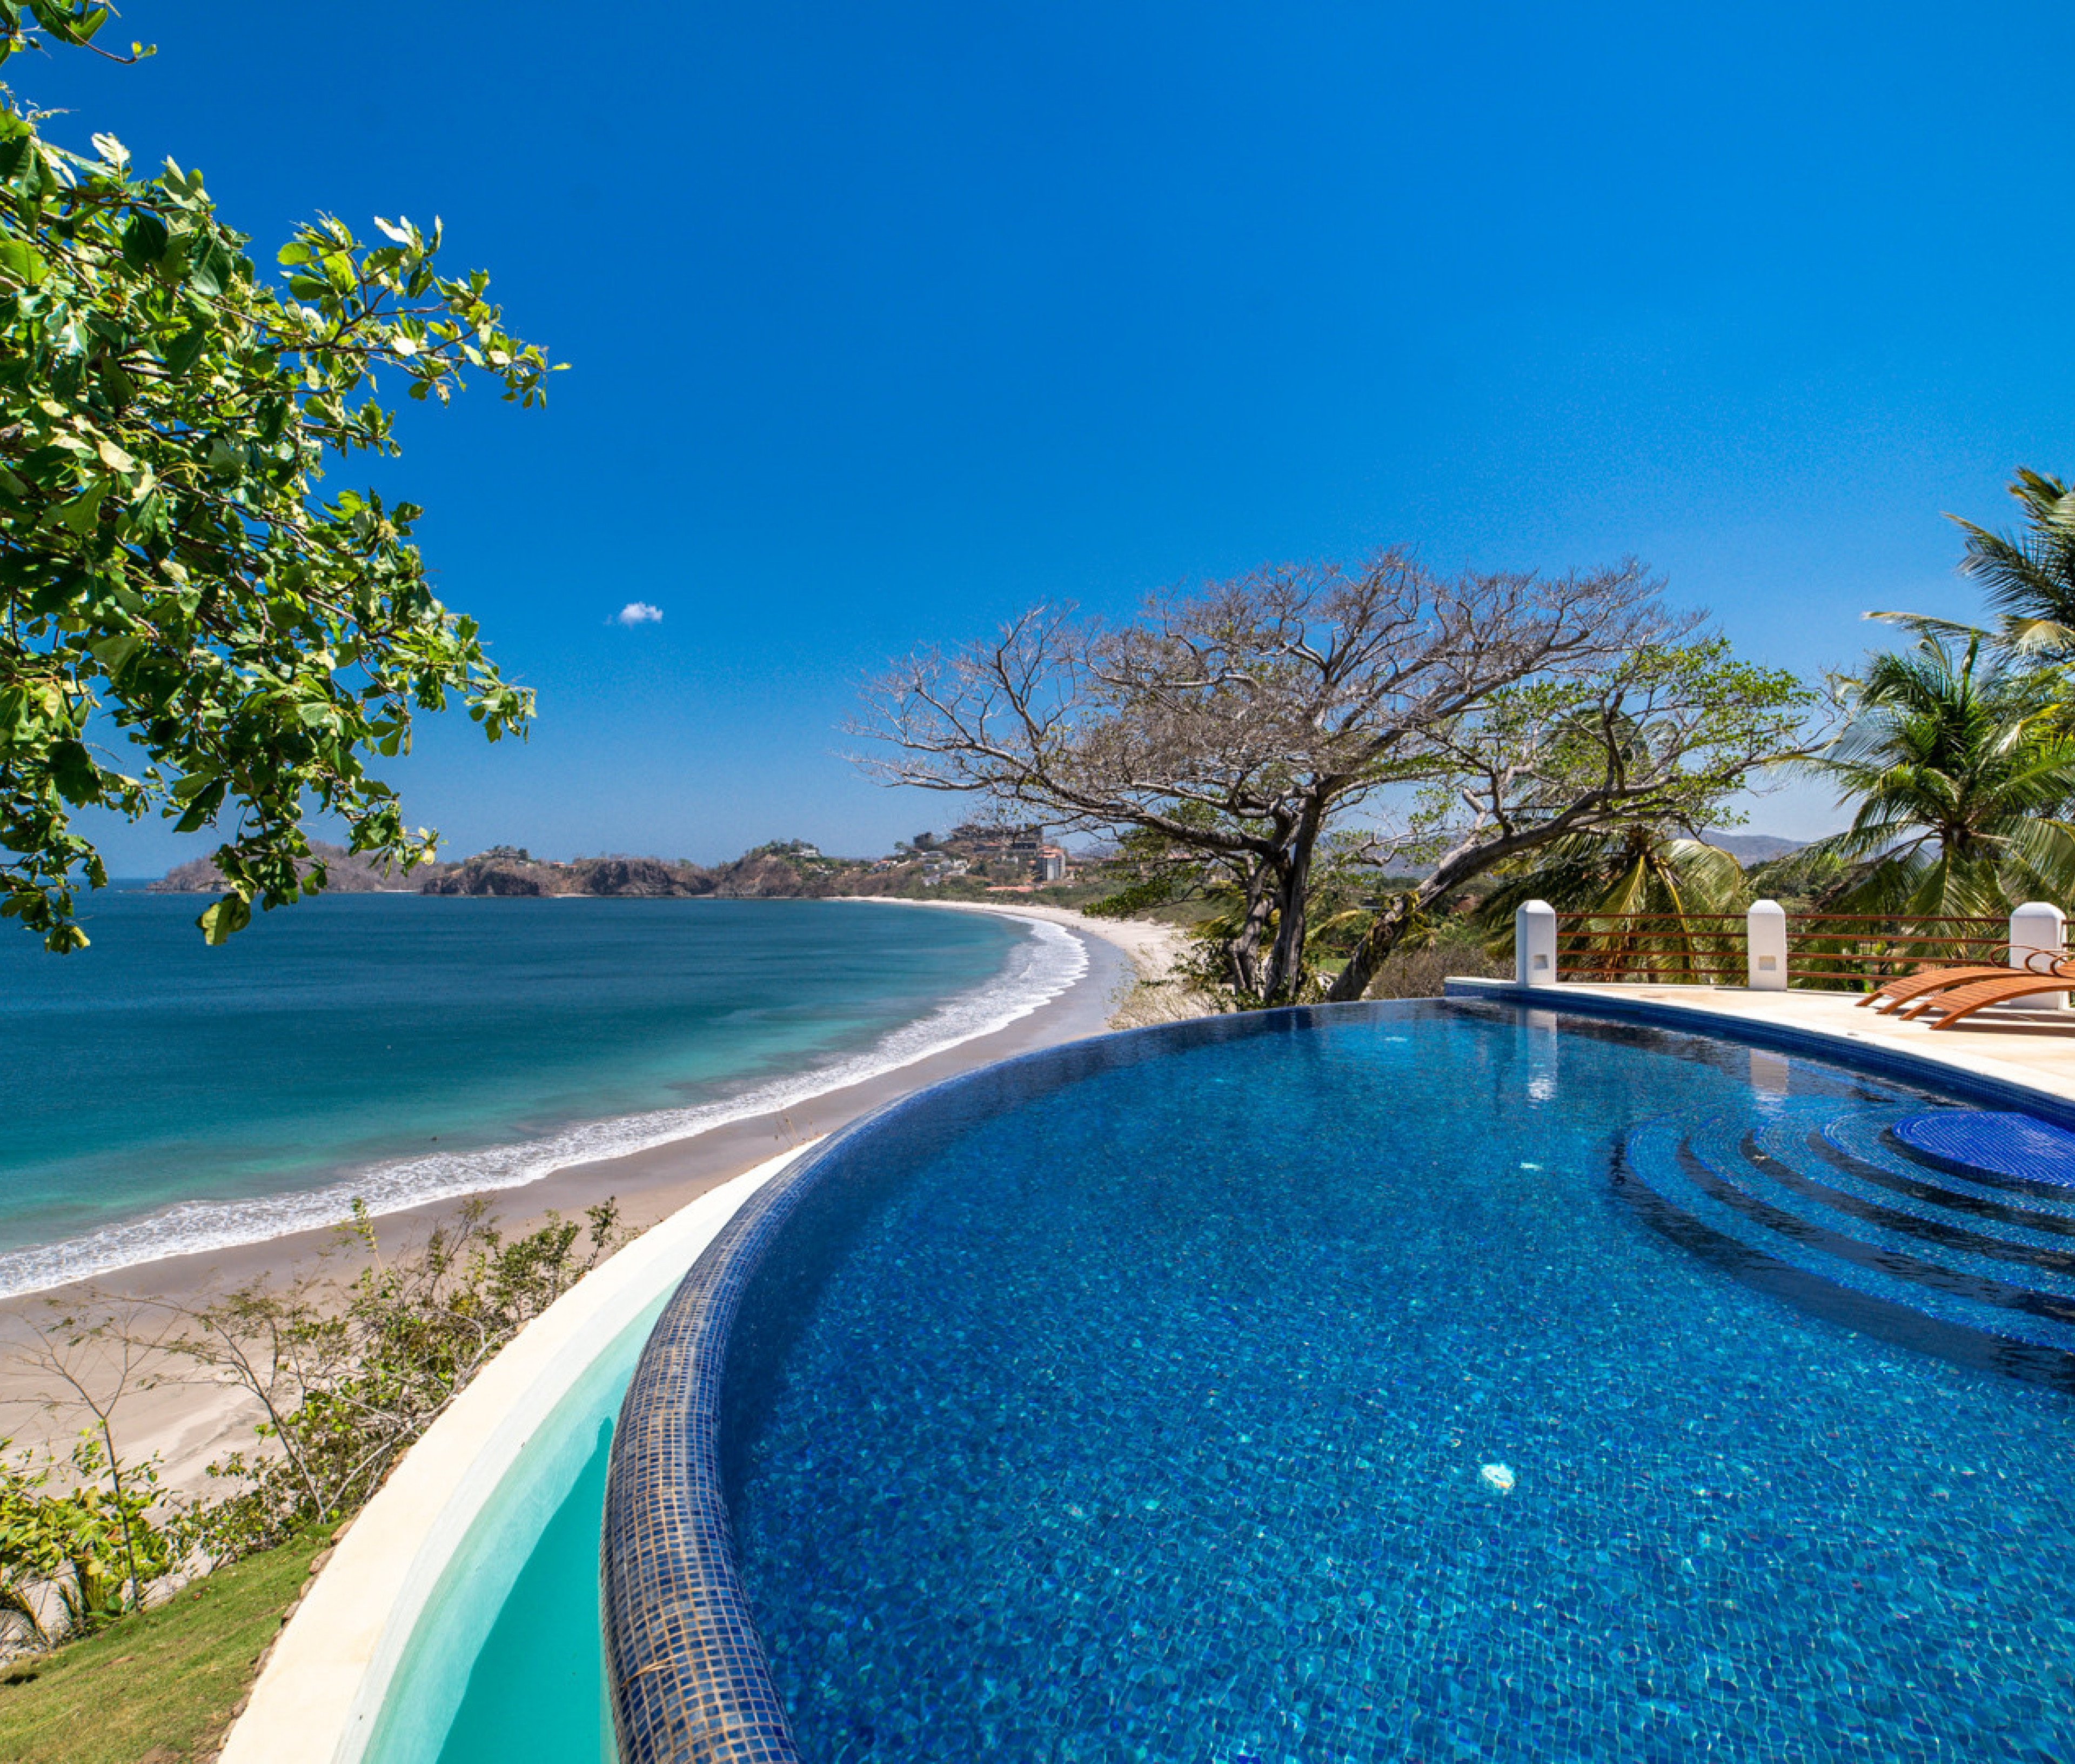 Costa Rica 29 - Costa Rica villa with pool